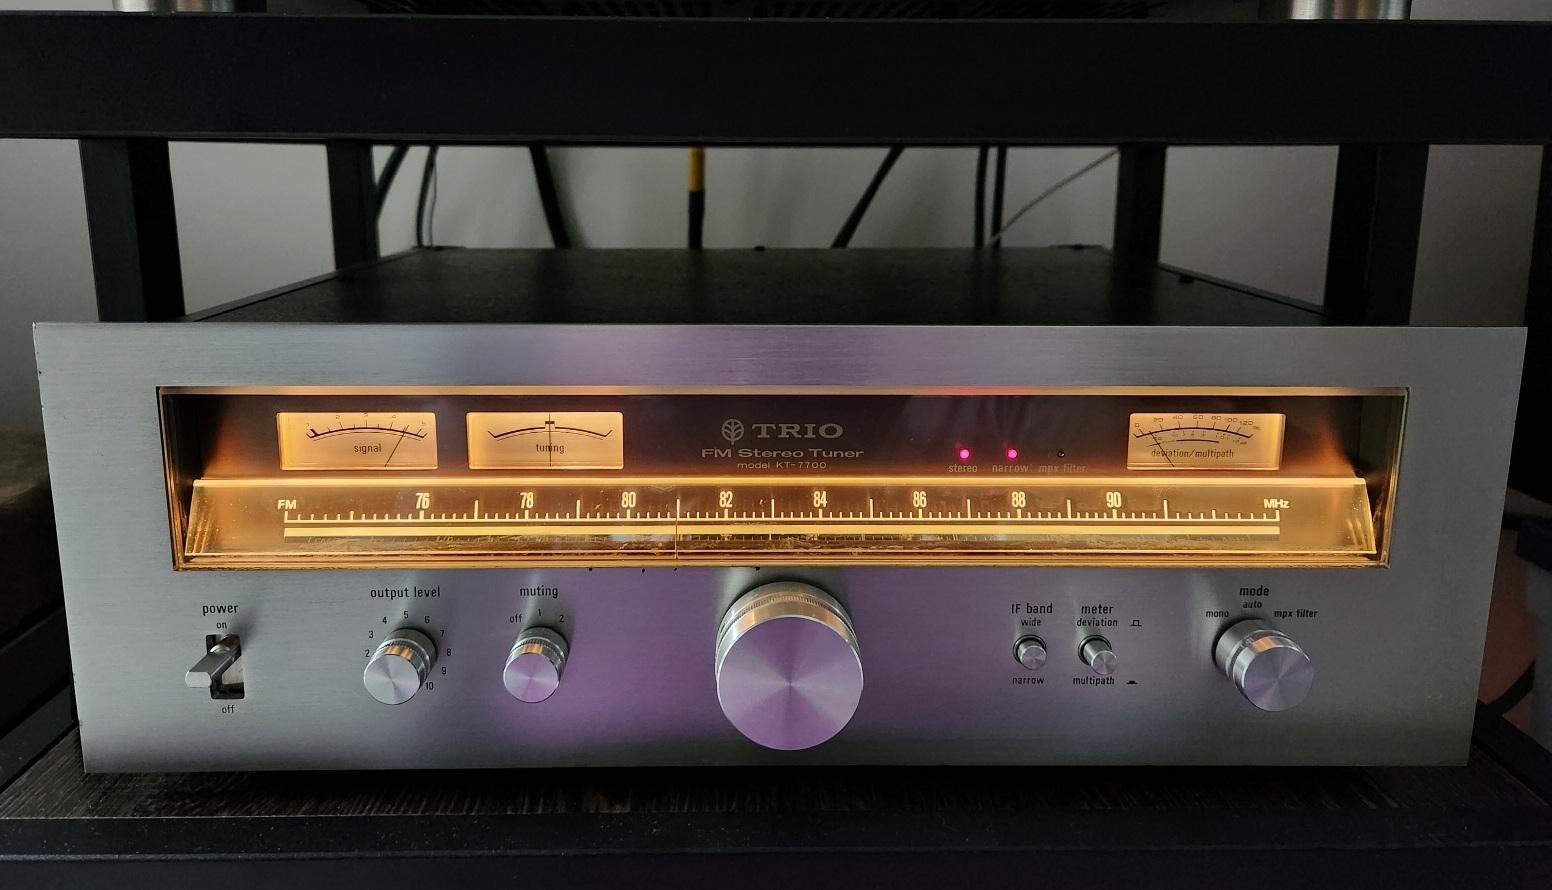 TORIO FM Stereo Tuner KT-7700-